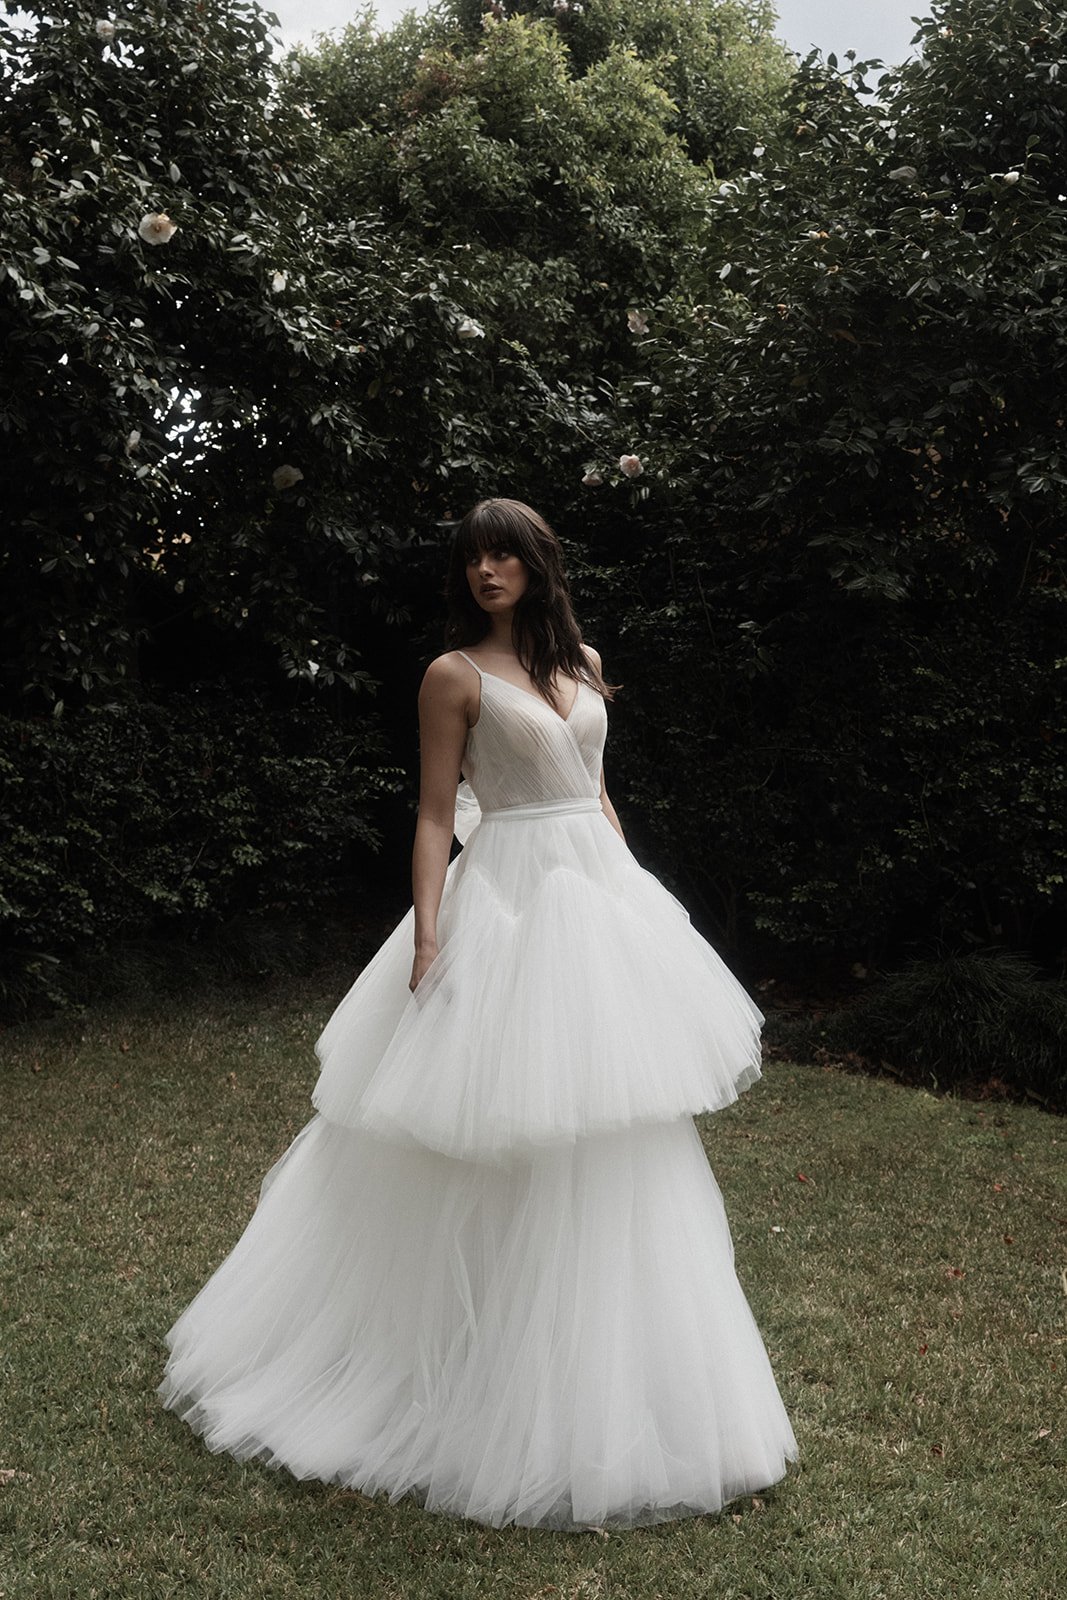 Sydney wedding dress tulle skirt romantic gown .jpg